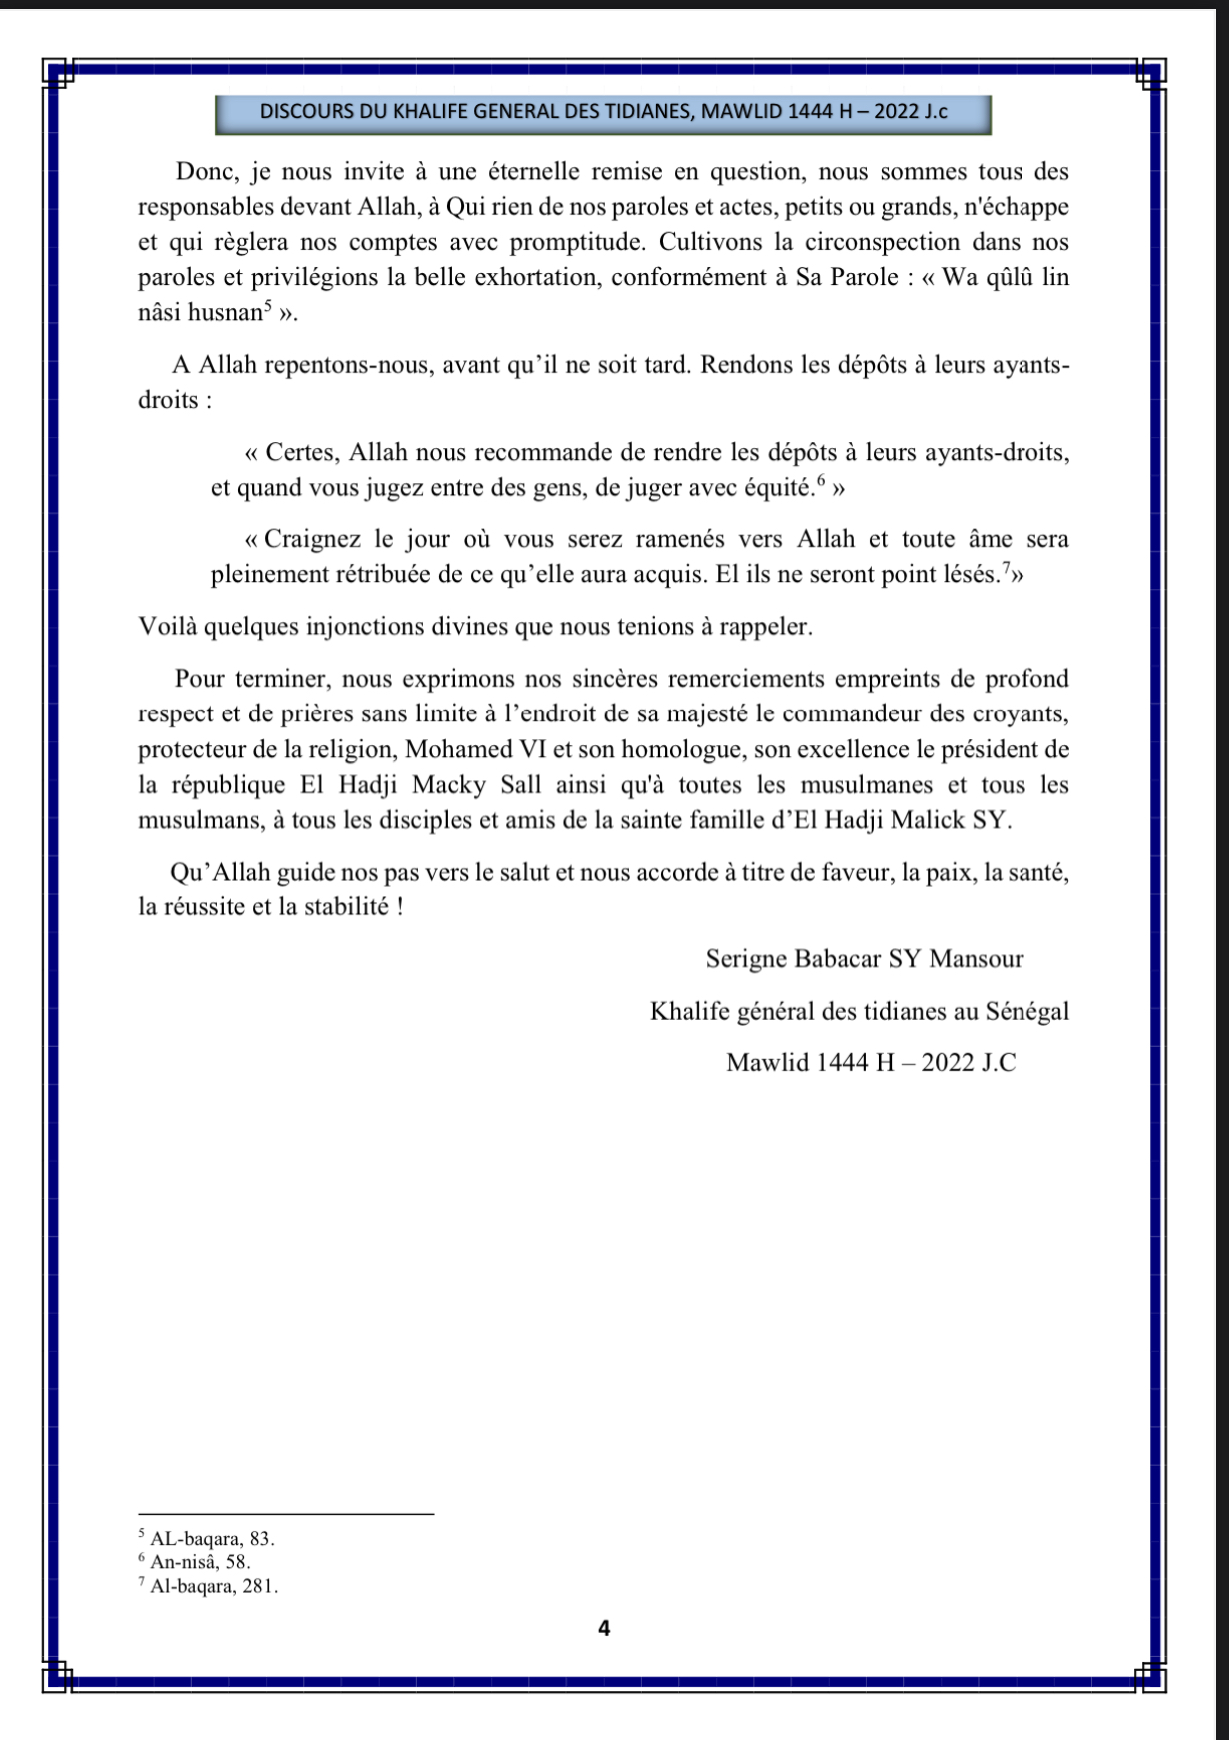 121ème édition du Gamou de Tivaouane : L'intégralité du message du Khalife général des Tidianes, Serigne Babacar Sy Mansour...